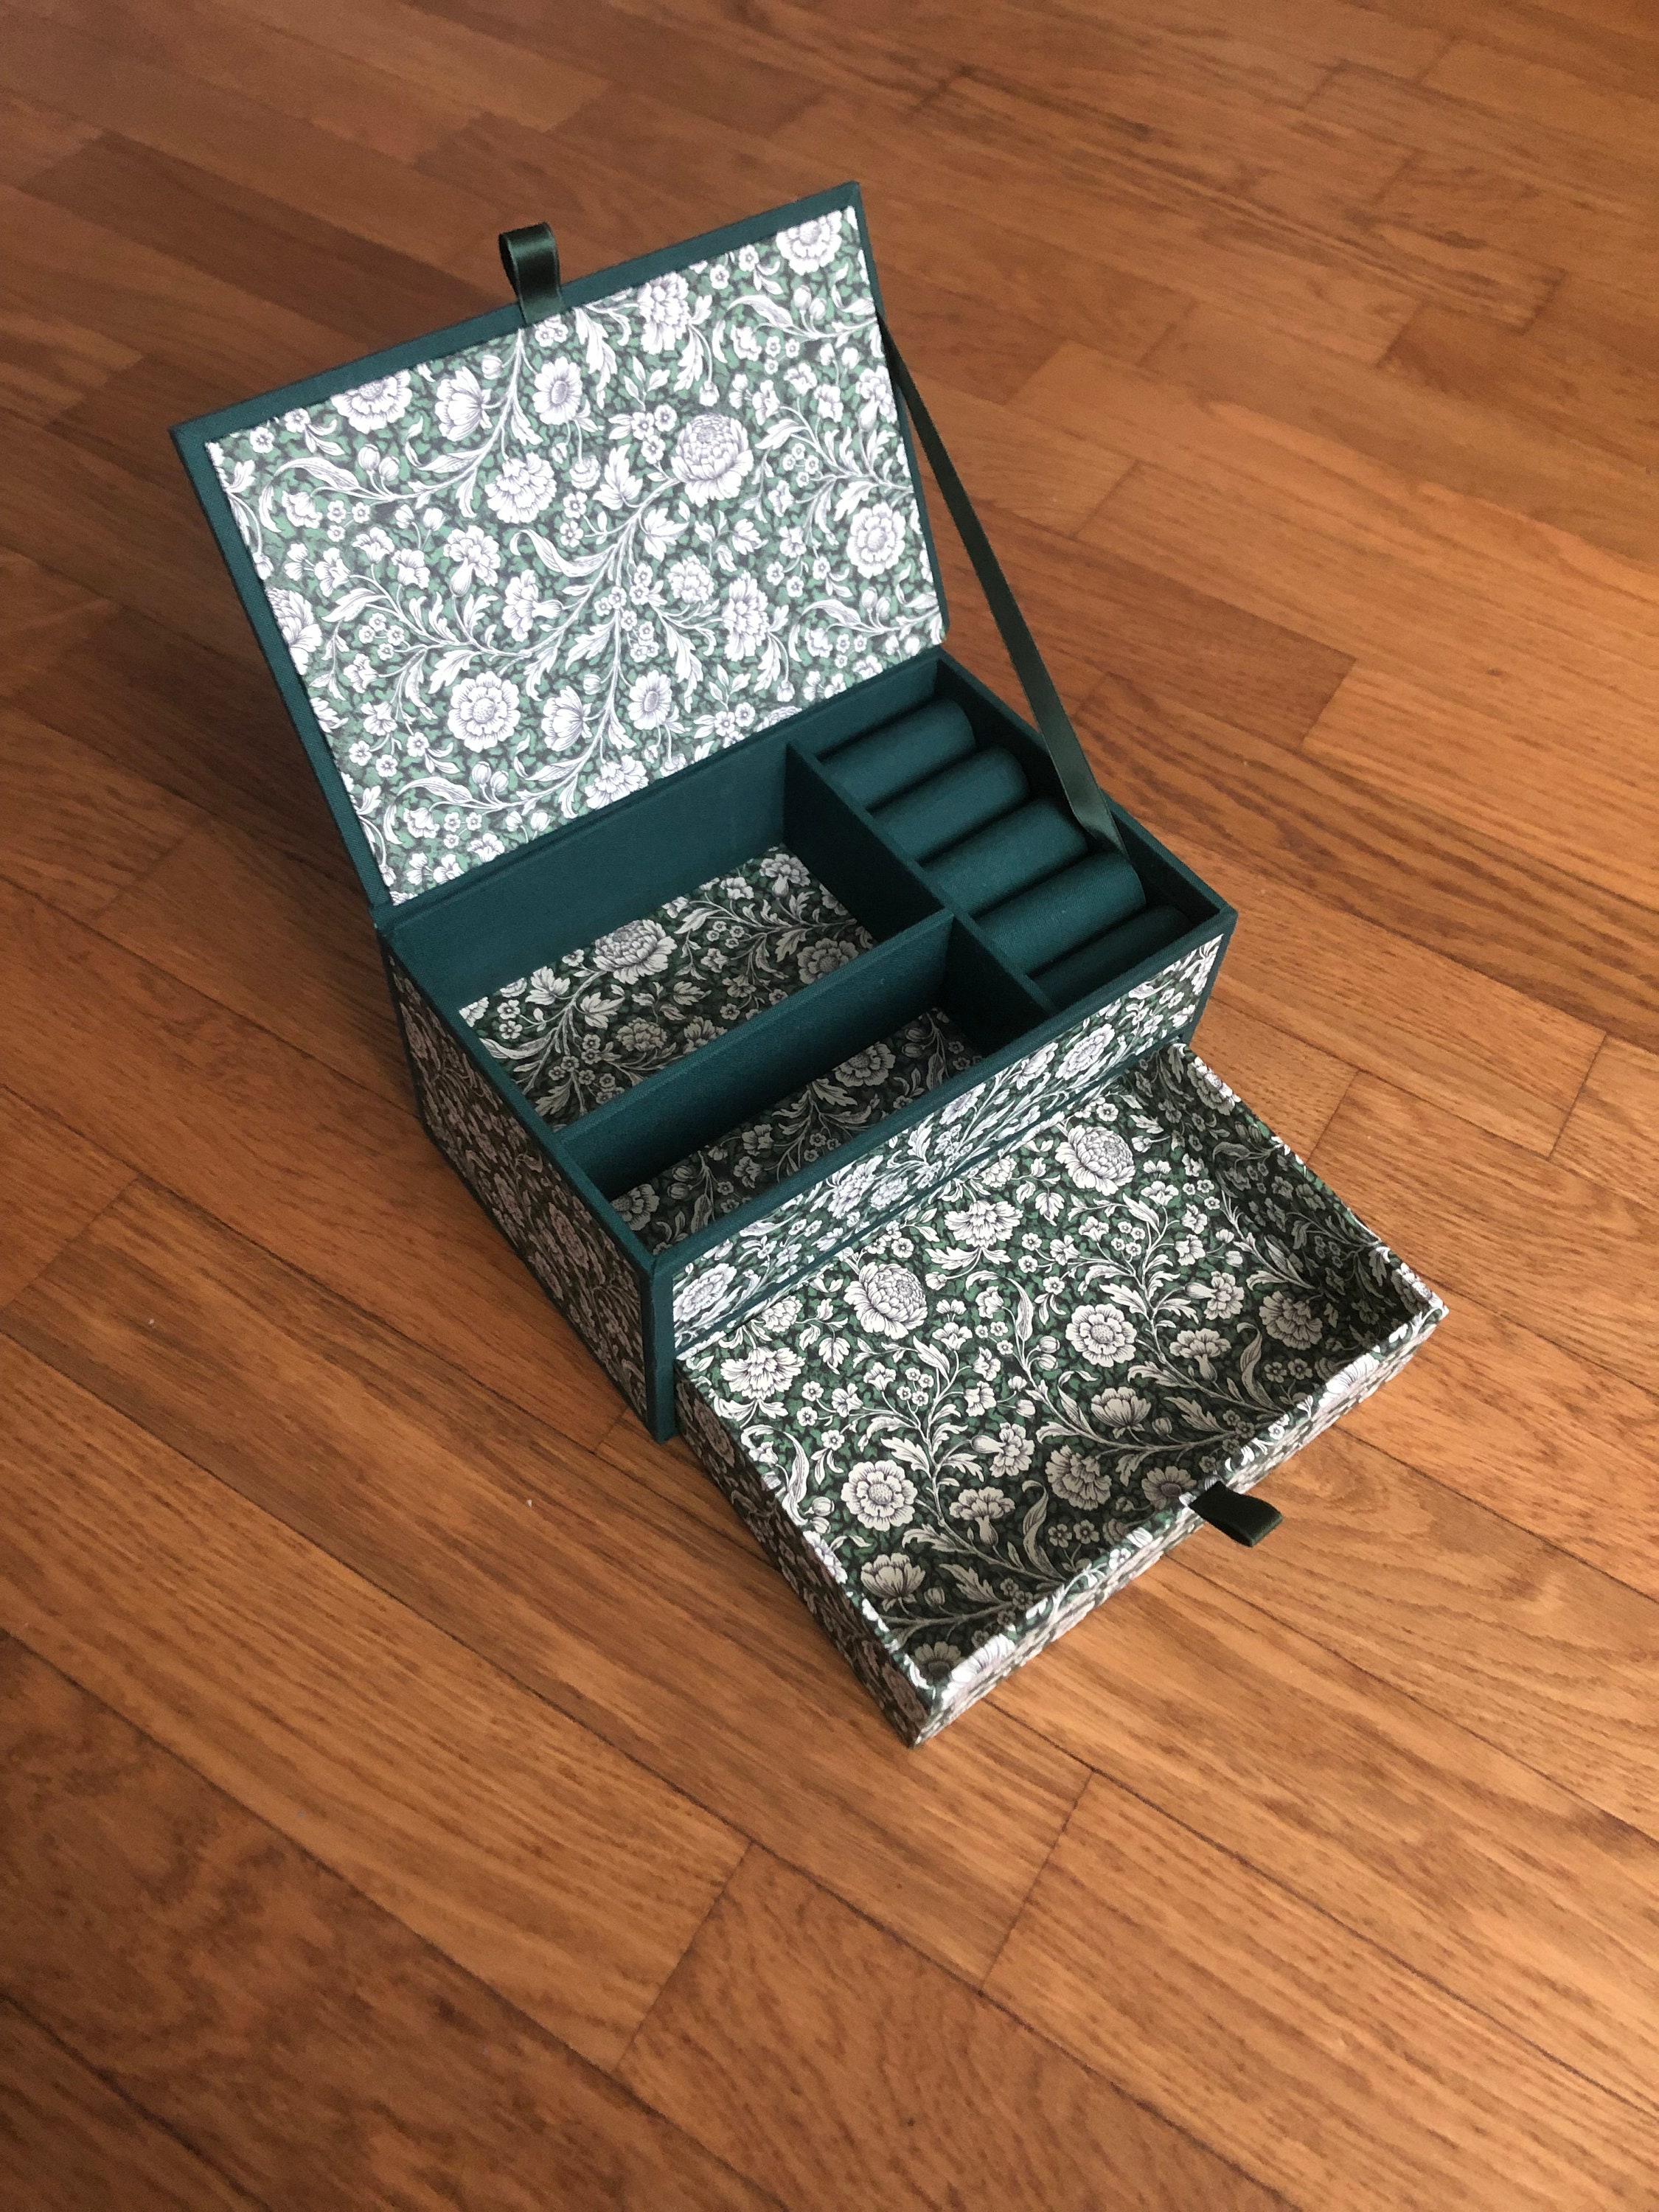 Monte Carlo Jewelry Box Design Ideas